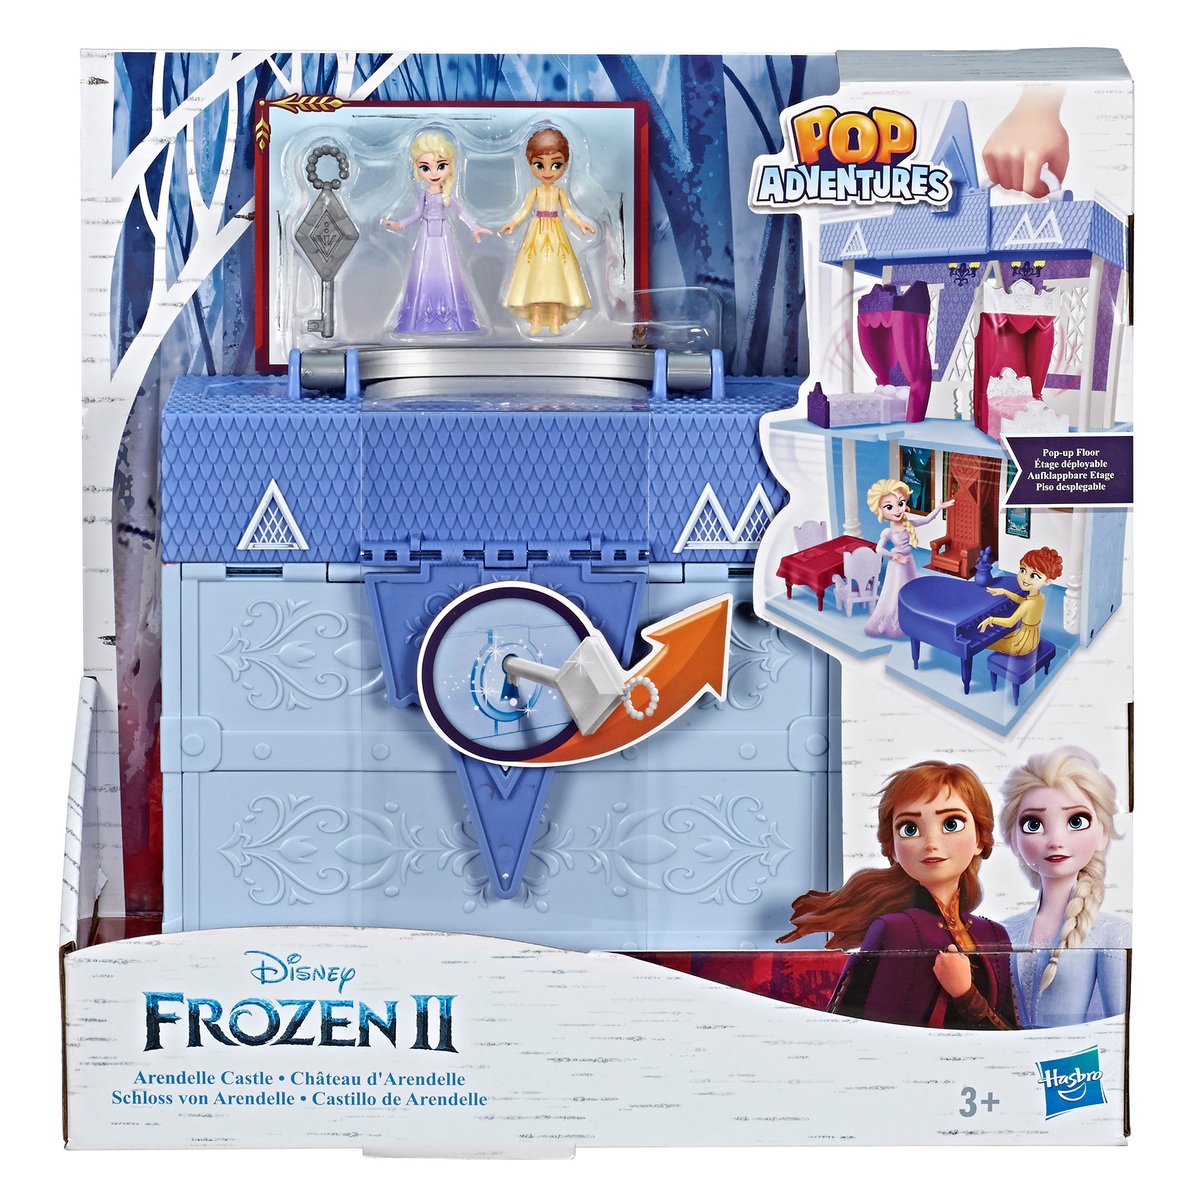 Disney Frozen-II Pop Adventures Arendelle Castle Playset With Handle E6548